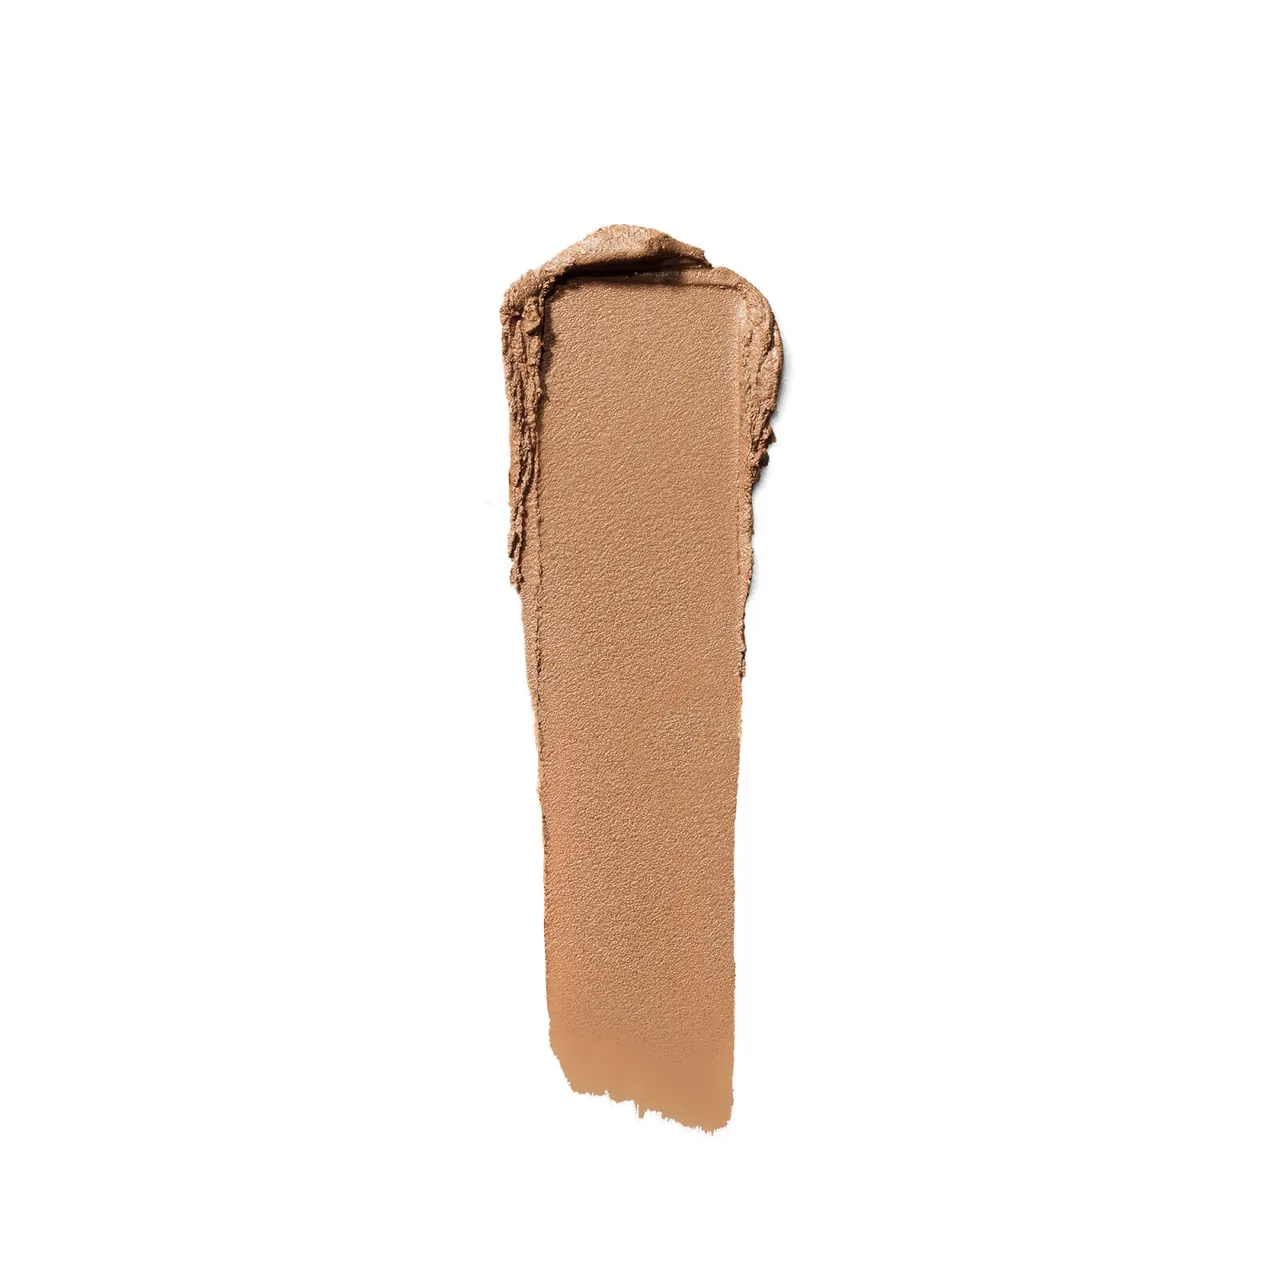 Bobbi Brown Long-Wear Cream Shadow Stick (verschiedene Farbtöne) - Golden Bronze